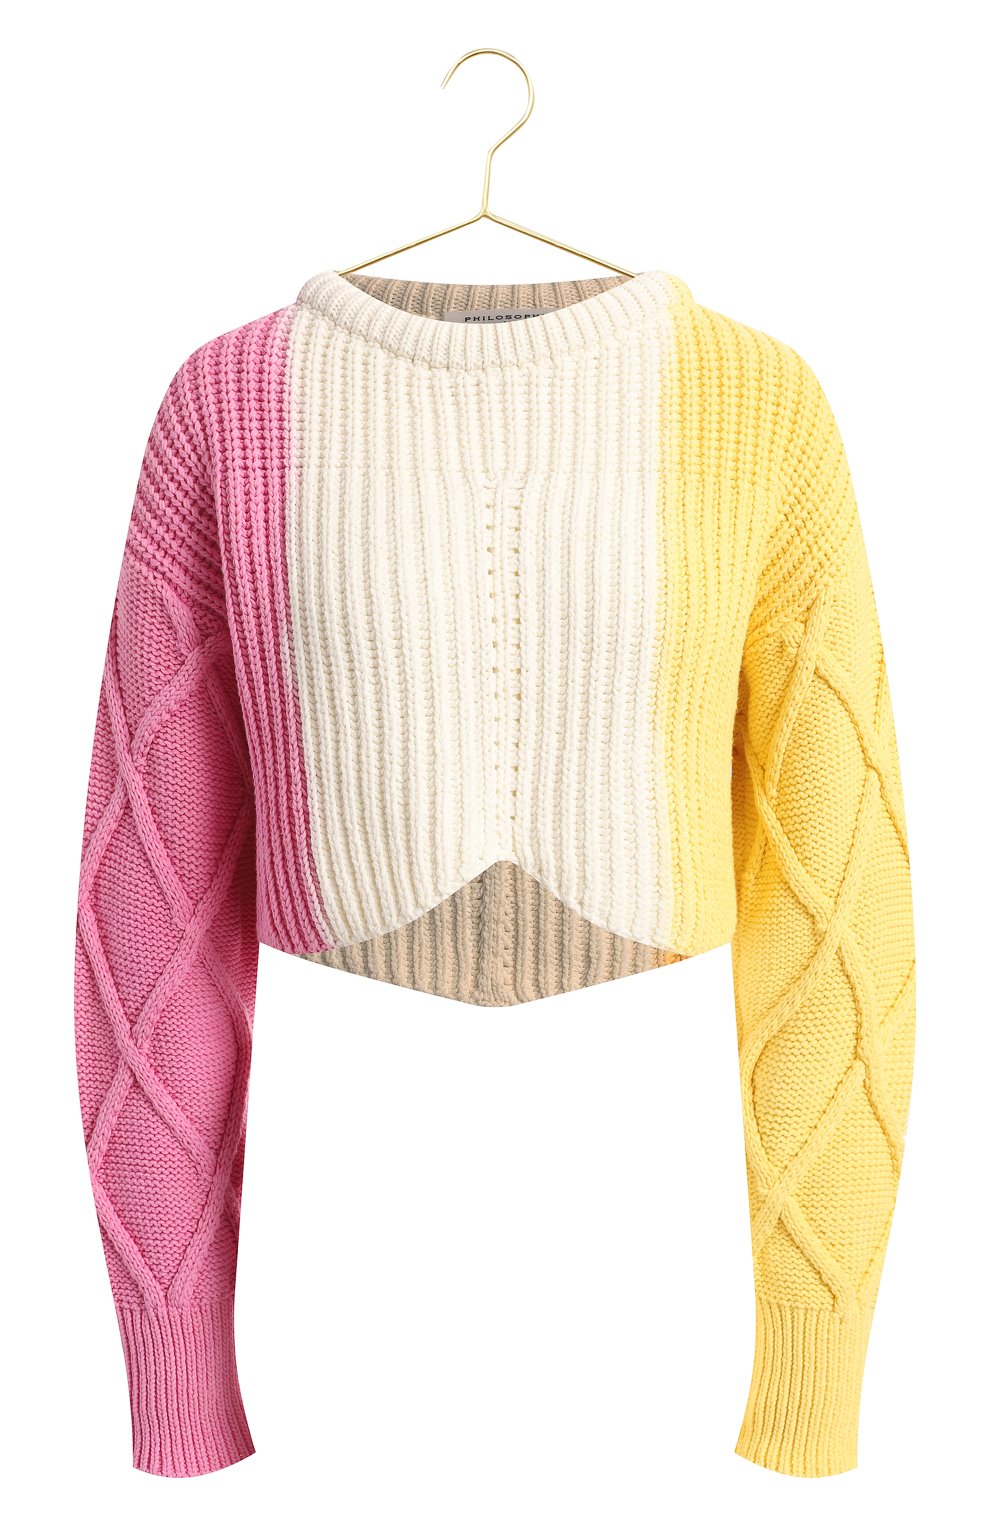 Хлопковый свитер | Philosophy di Lorenzo Serafini | Разноцветный - 1